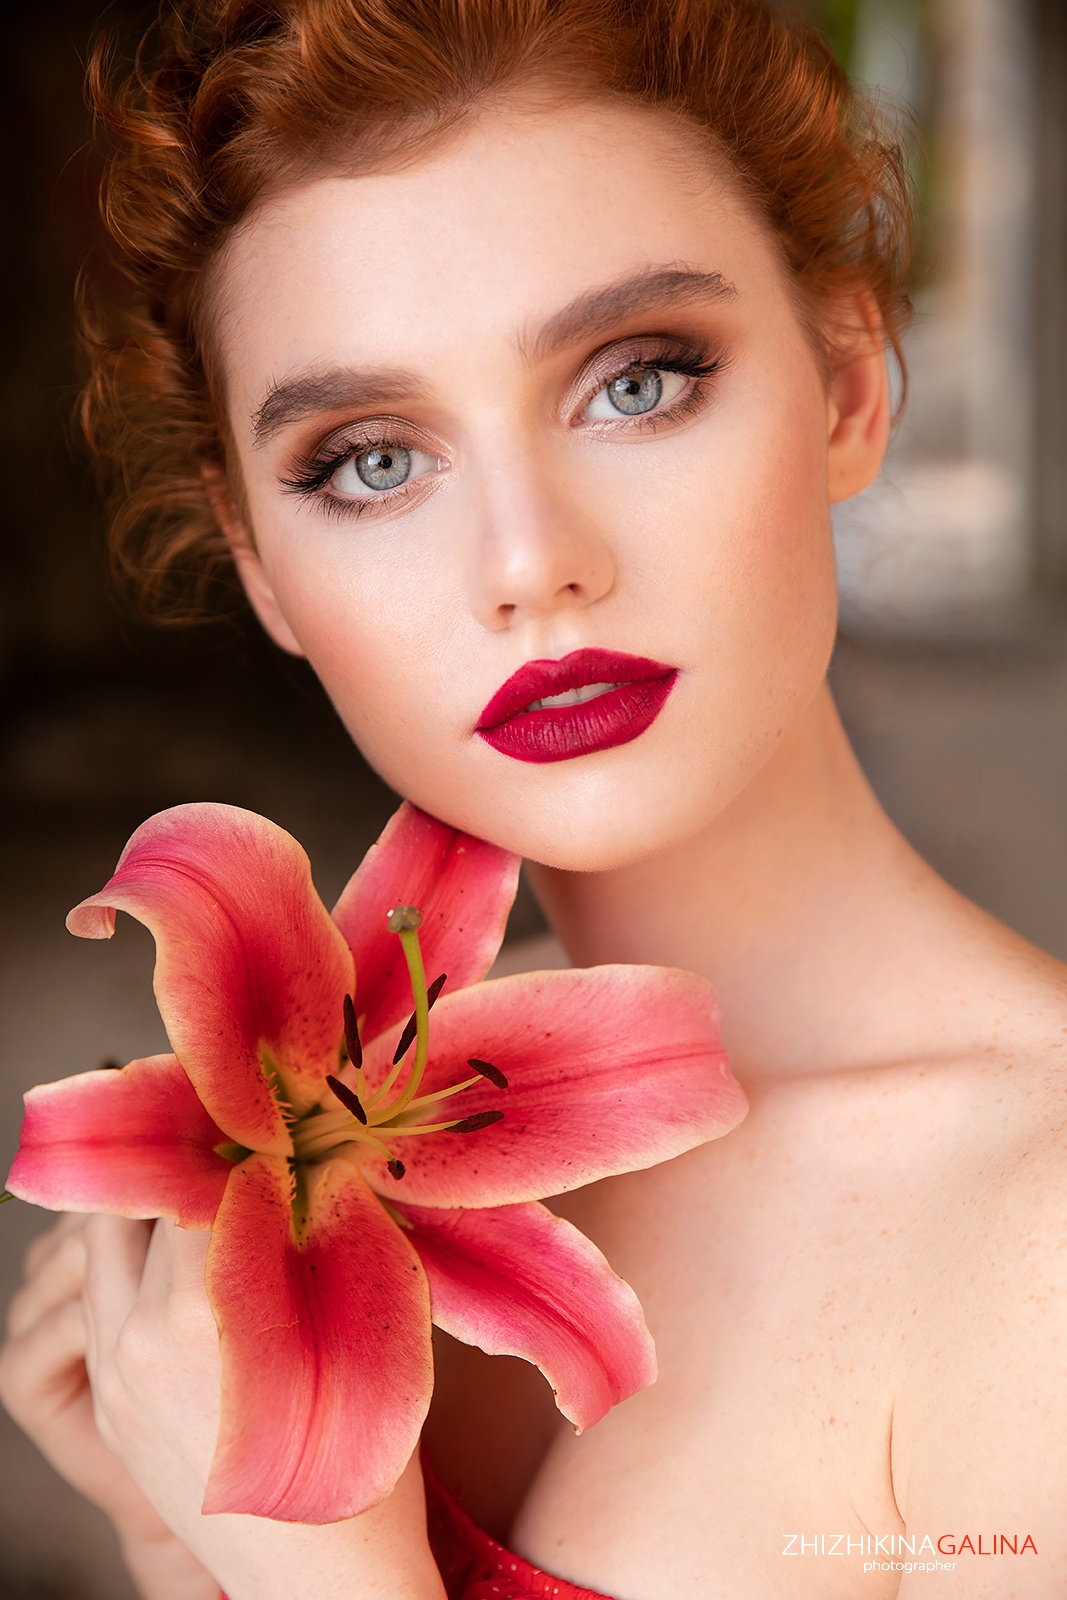 Flowers Face Makeup Women Red Lipstick Plants Galina Zhizhikina 1067x1600